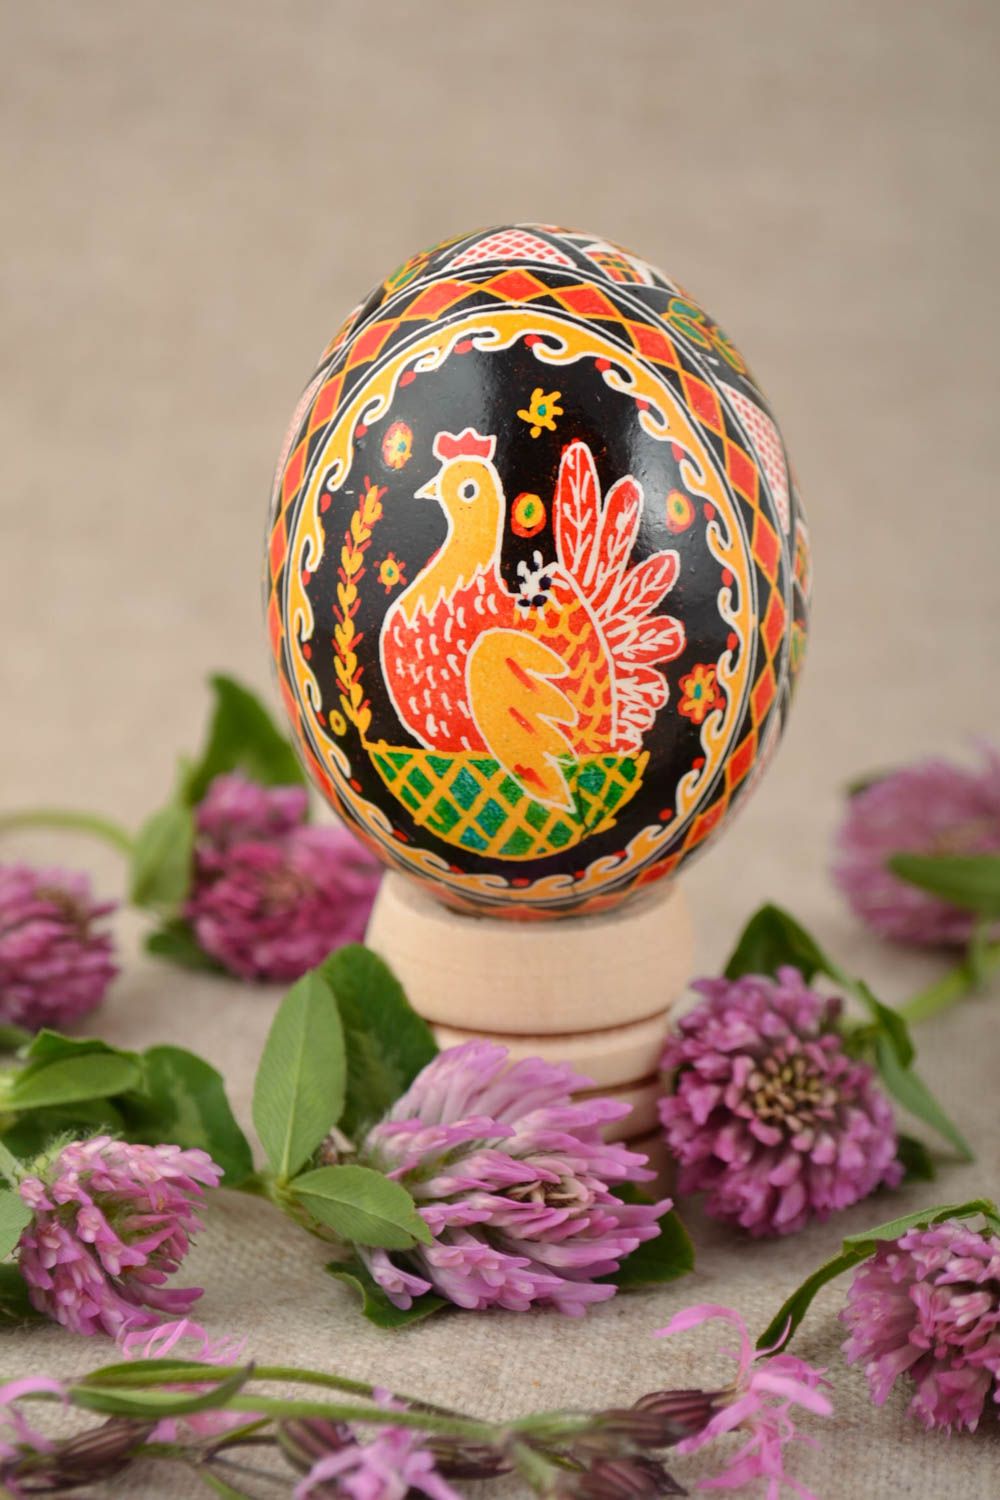 Пасхальное яйцо с изображением курочки и другими символами красивое хэнд мейд фото 1